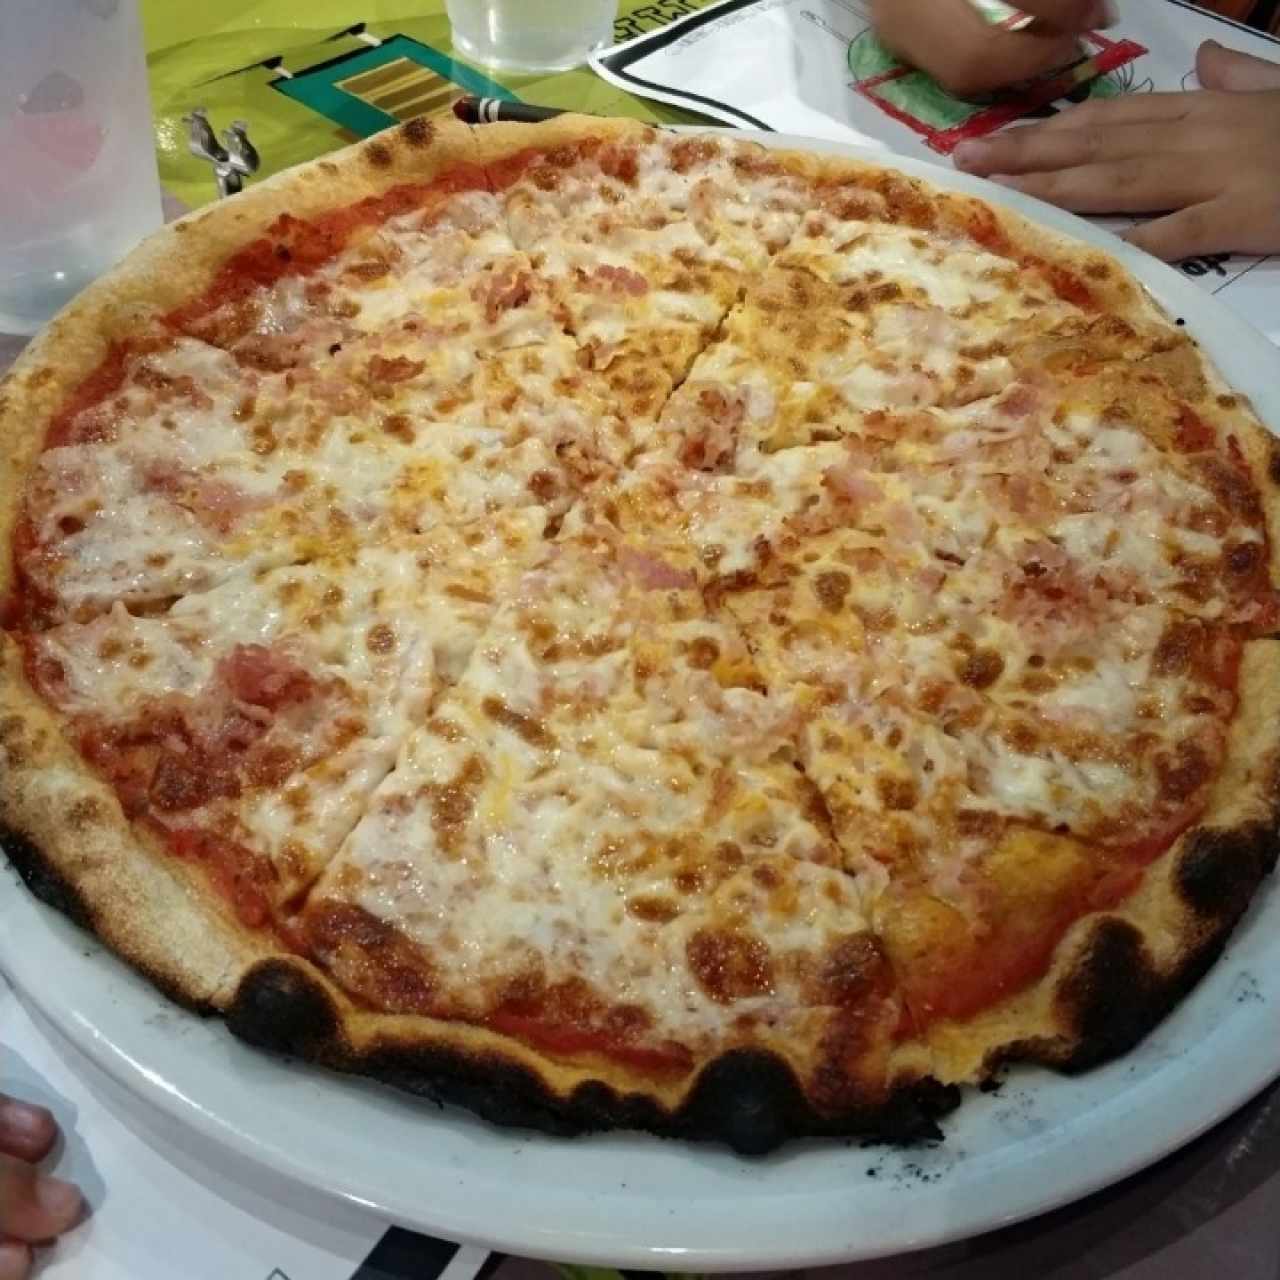 LA PIZZA - Carbonara